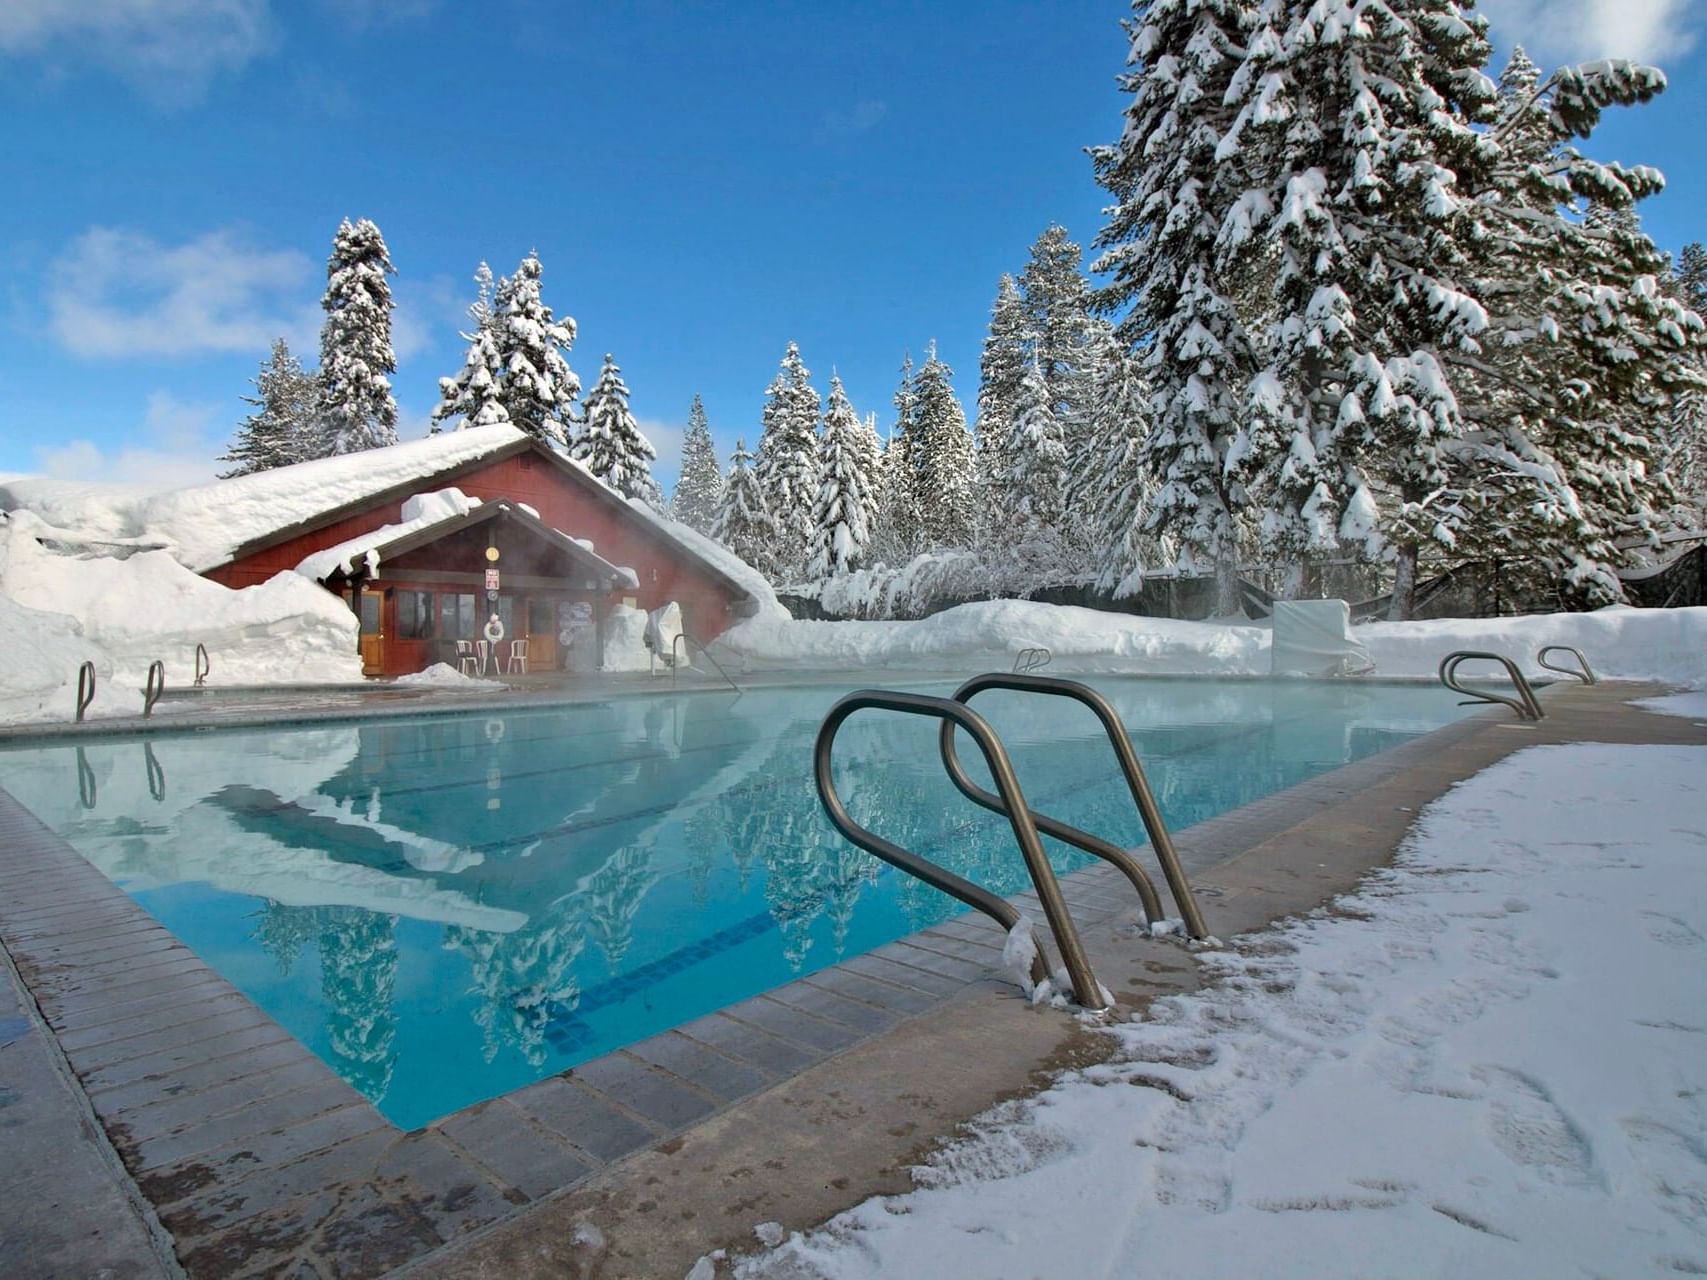 Outdoor pool with snow in winter at Granlibakken Tahoe